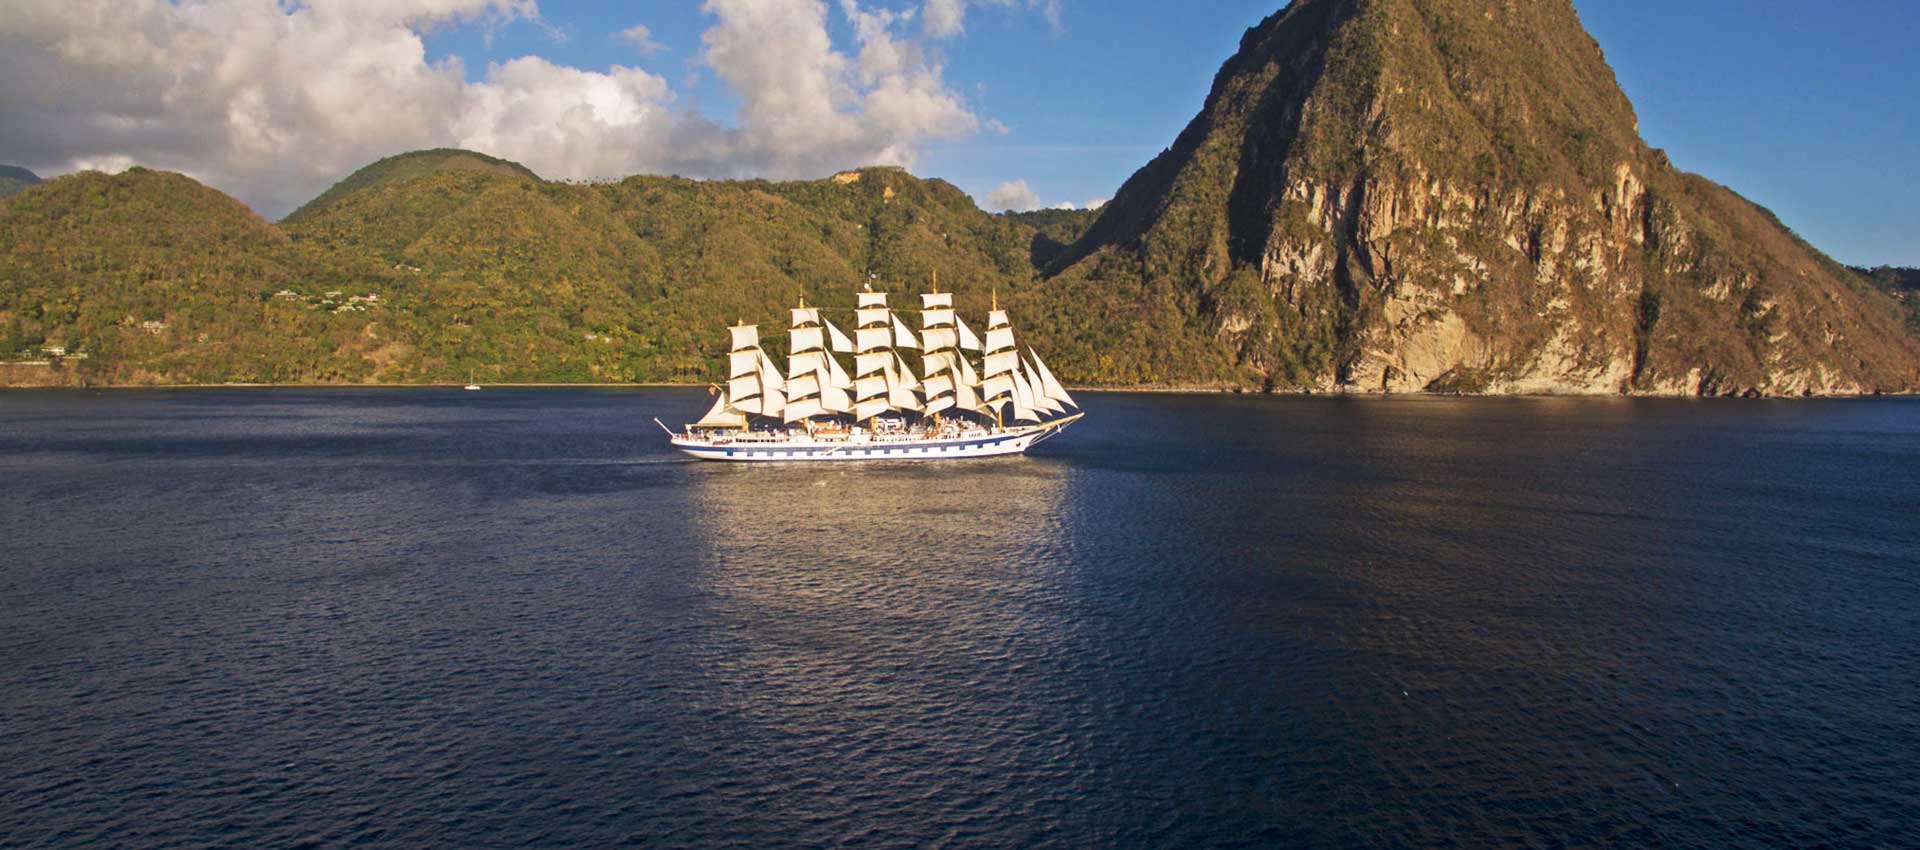 Sailing ship cruise: Grenadines from Barbados, Caribbean